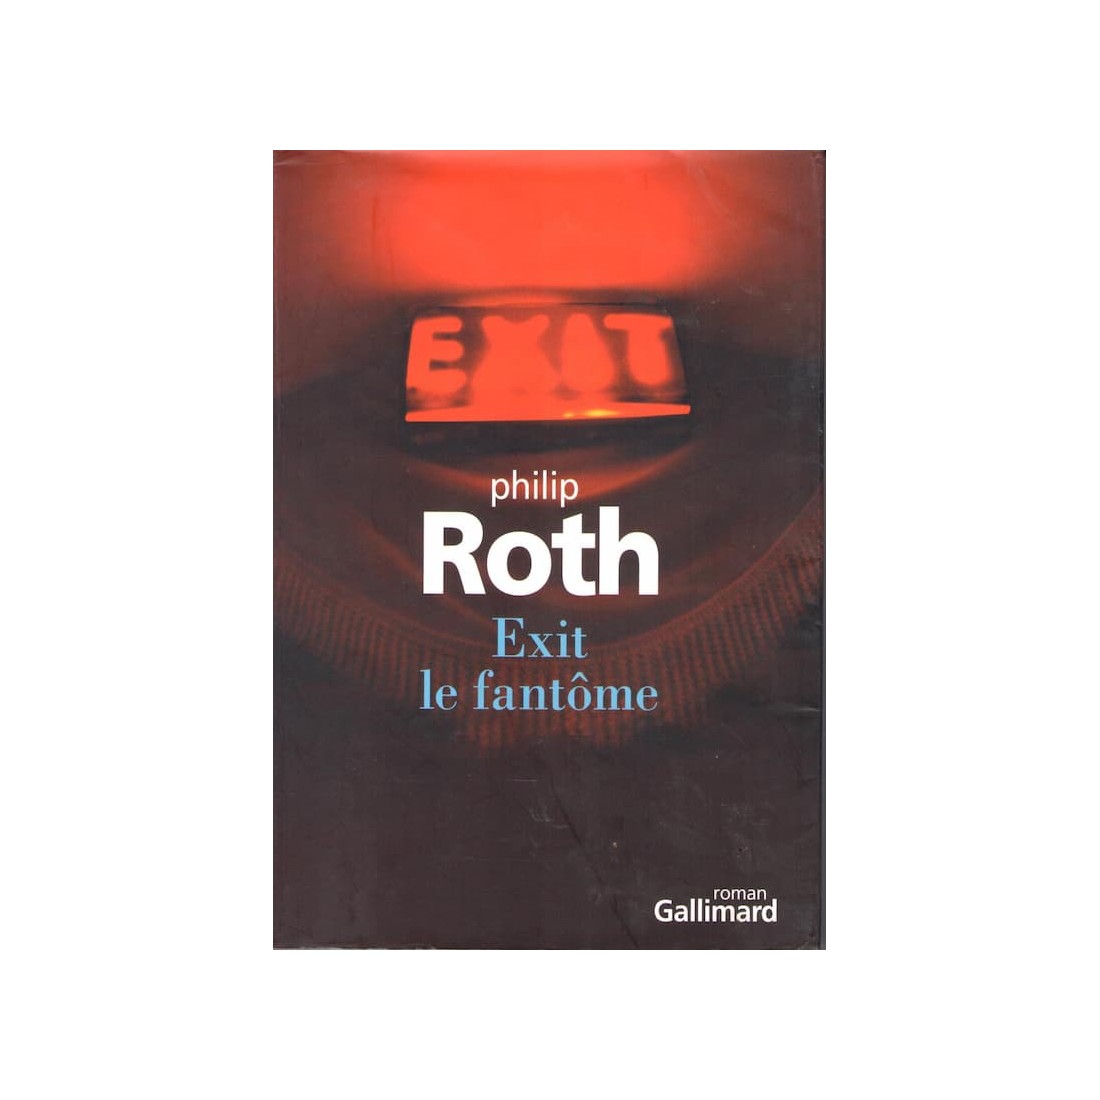 Exit le fantôme - Roman de Philip Roth - Ocazlivres.com